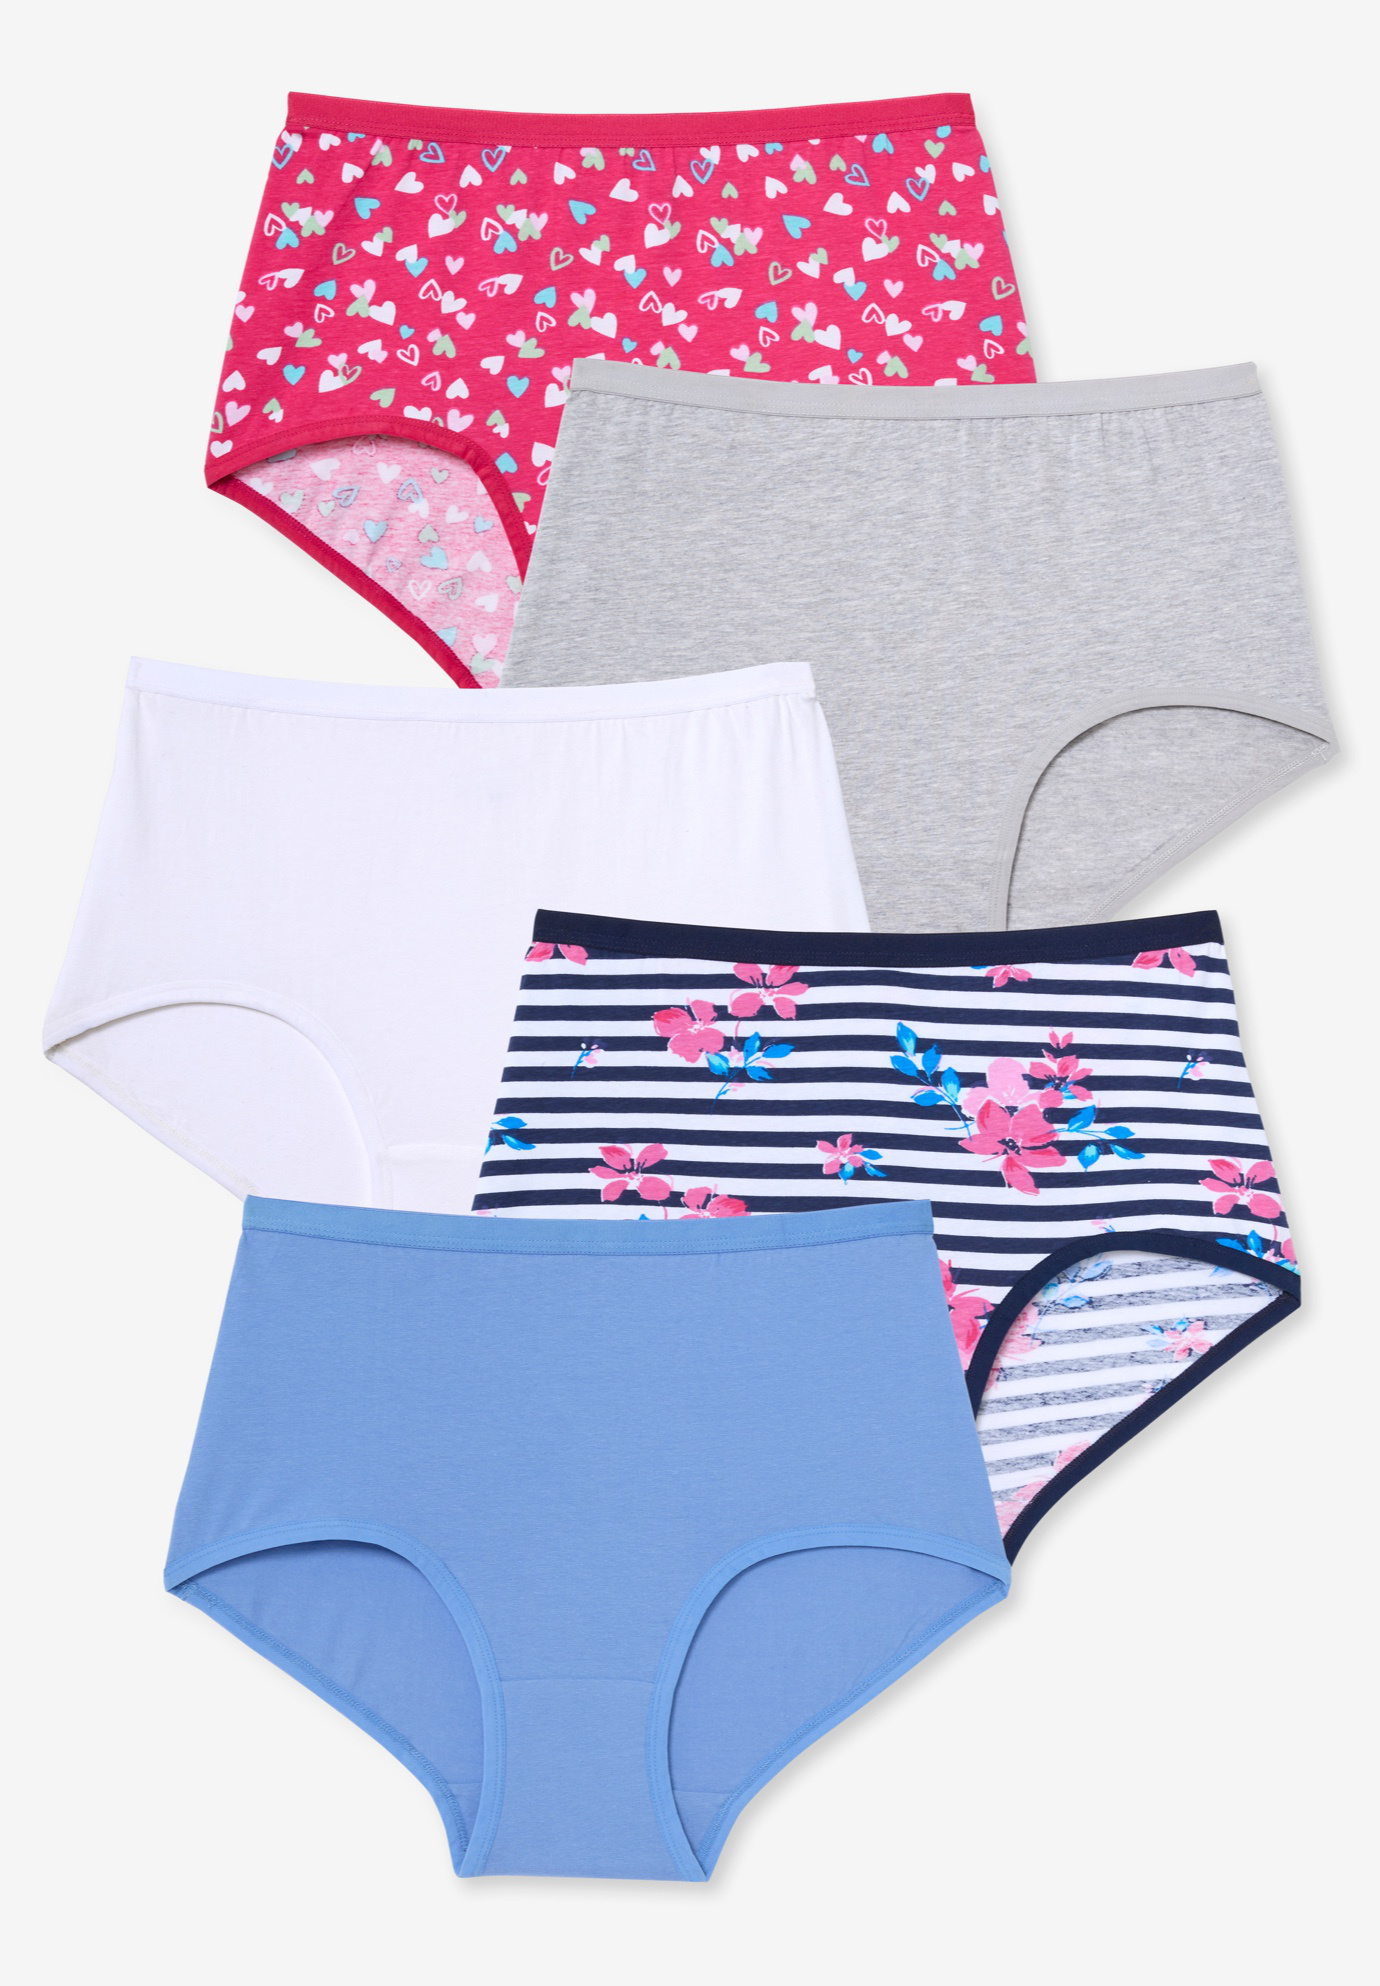 Plain Women''s Panties Stretch Cotton Boxer Briefs Underwear at Rs